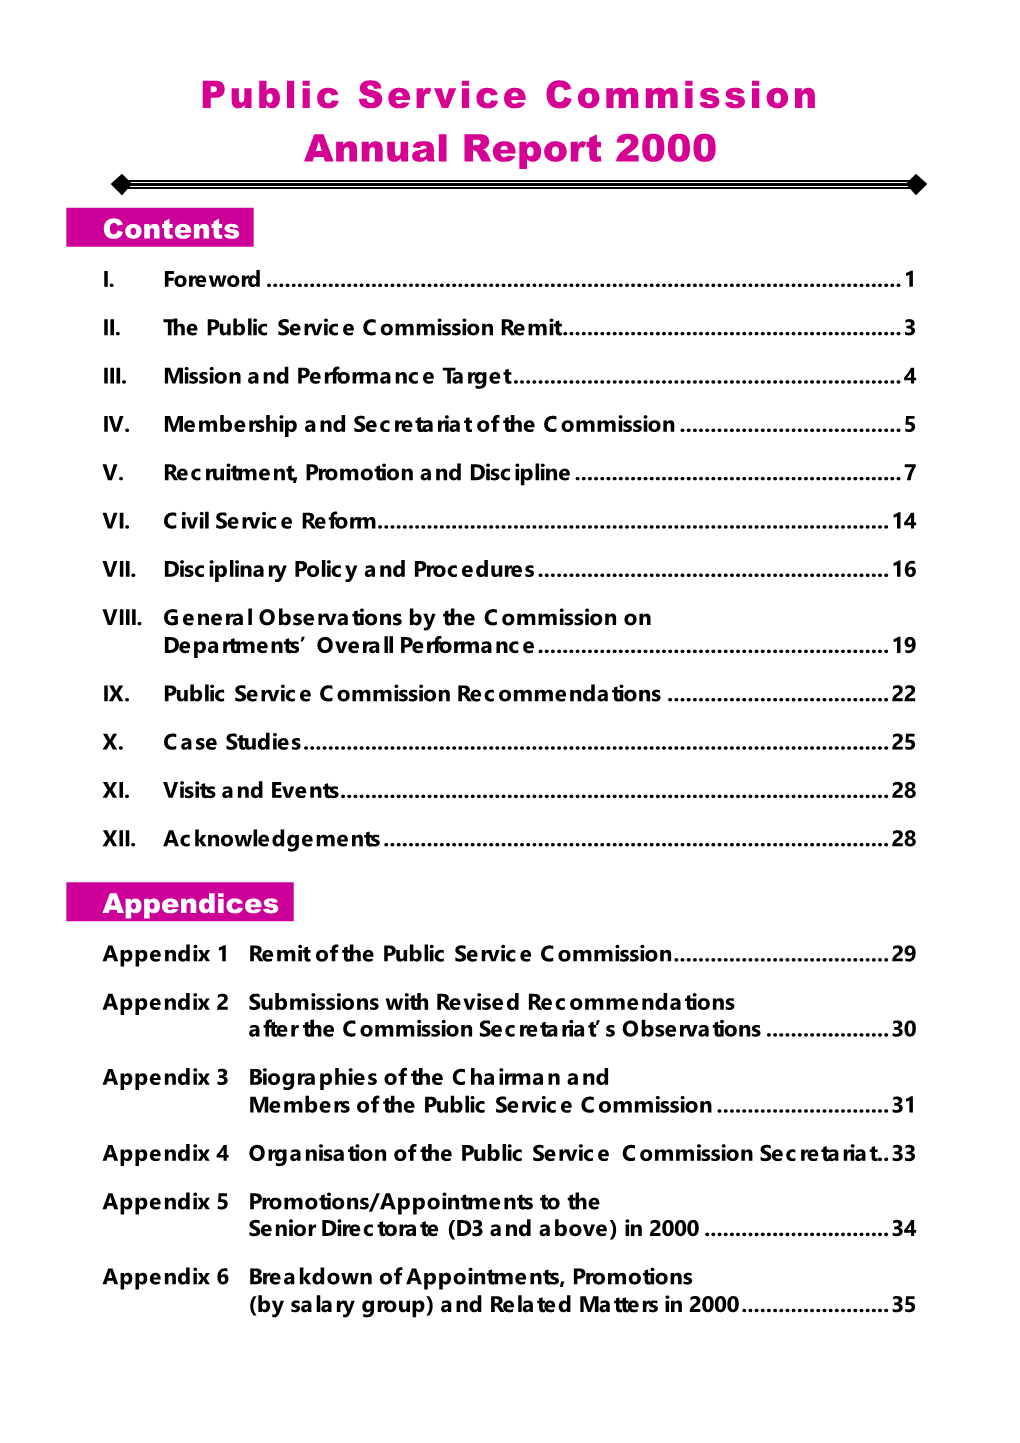 Public Service Commission Annual Report 2000